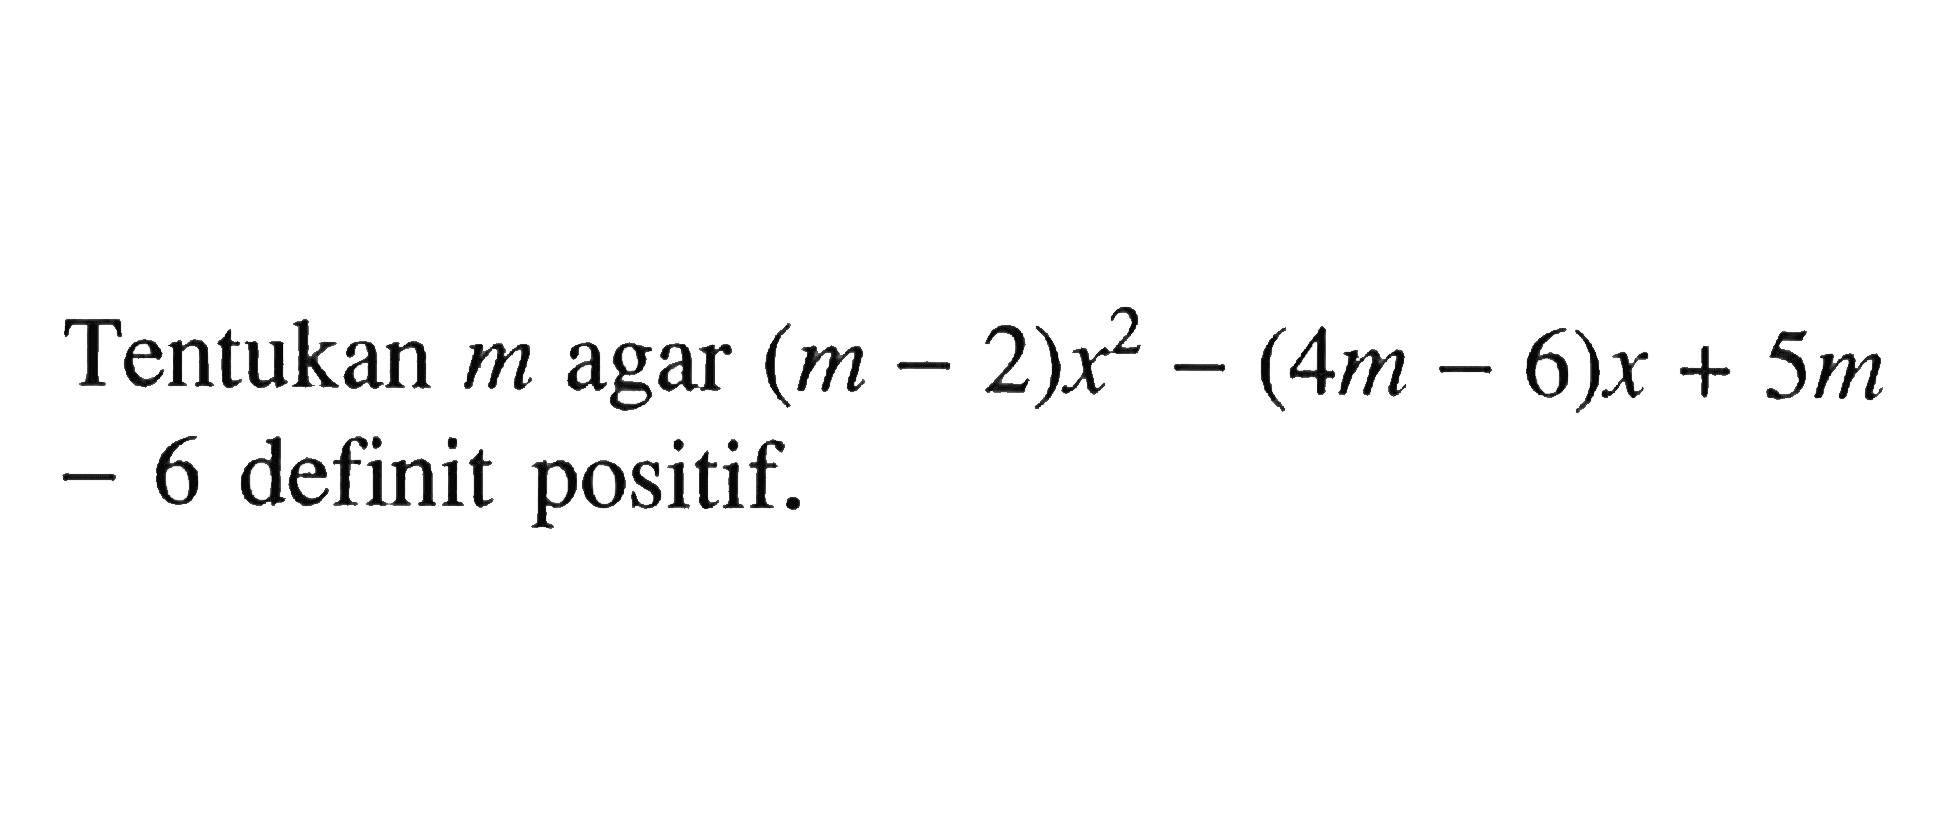 Tentukan m agar (m - 2)x^2 - (4m - 6)x + 5m - 6 definit positif.